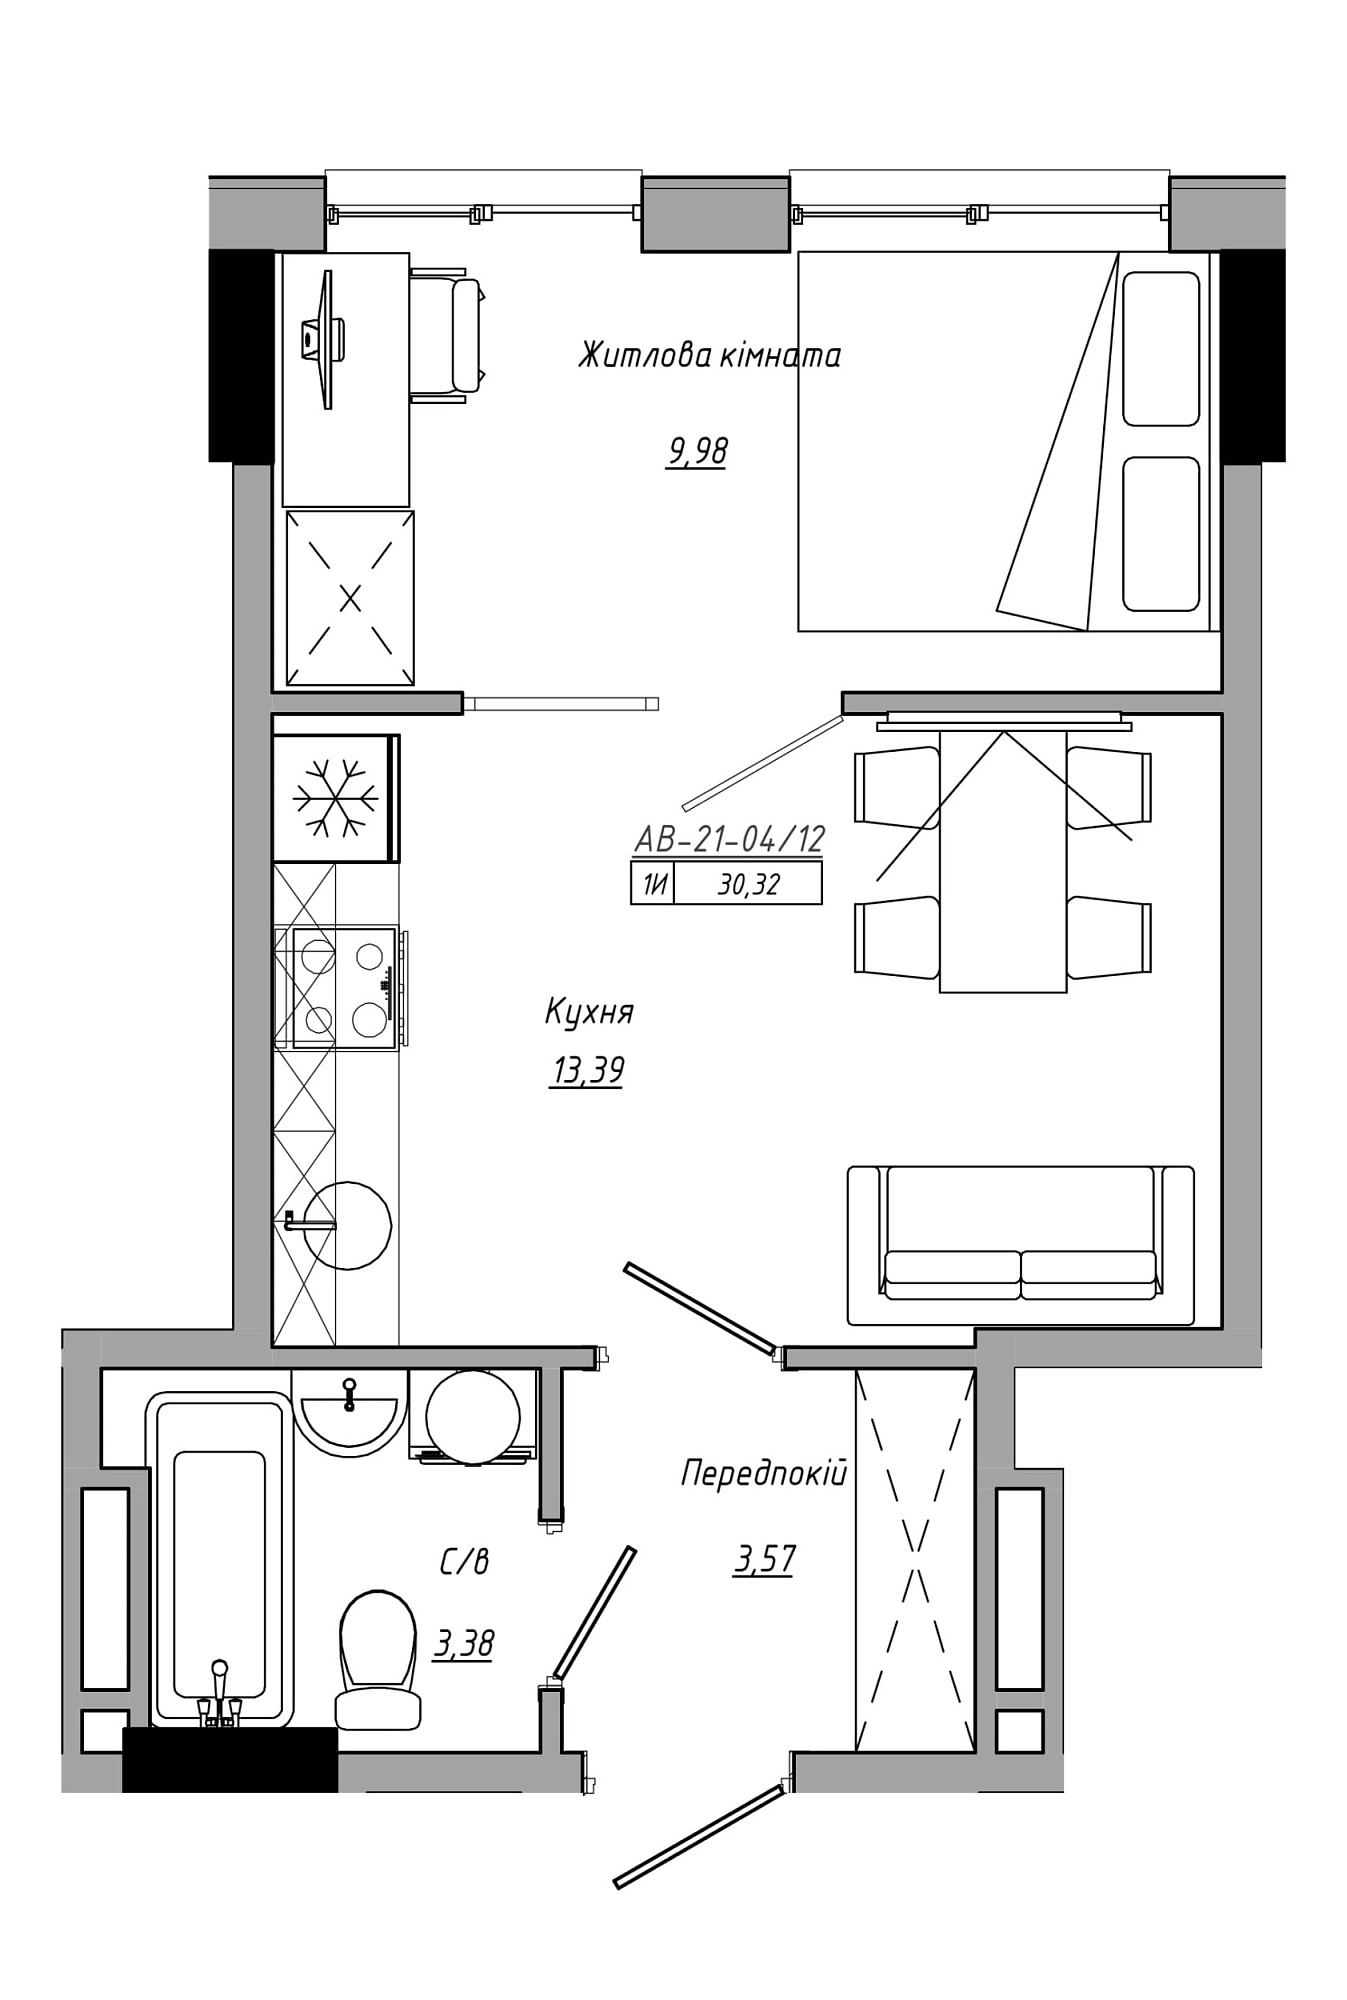 Планировка 1-к квартира площей 30.32м2, AB-21-04/00012.